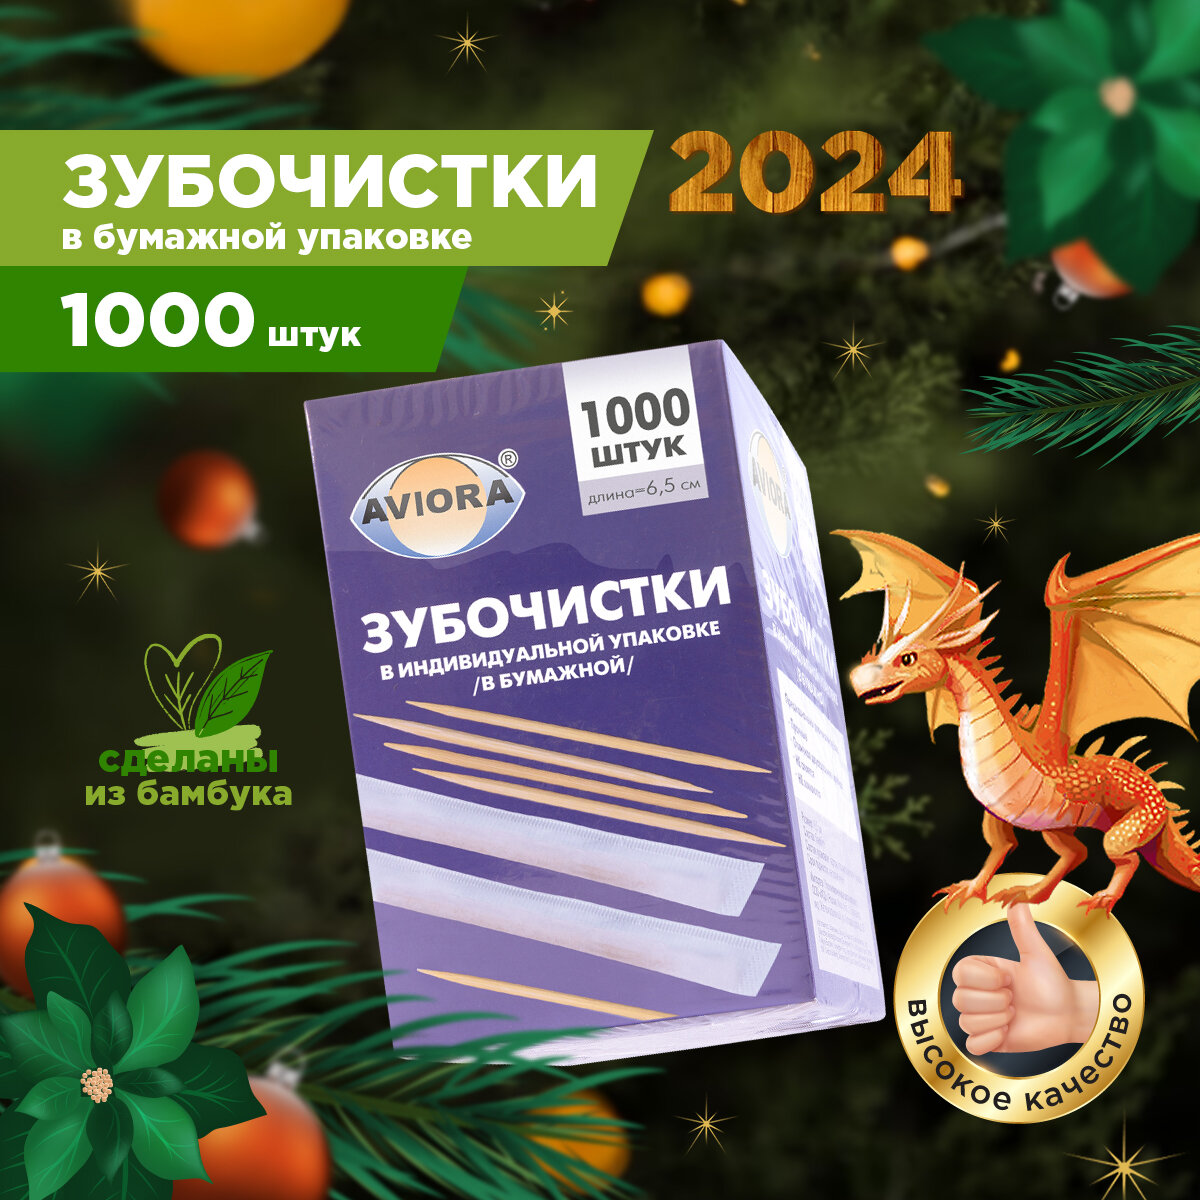 Зубочистки Aviora, бамбуковые, 1000 шт